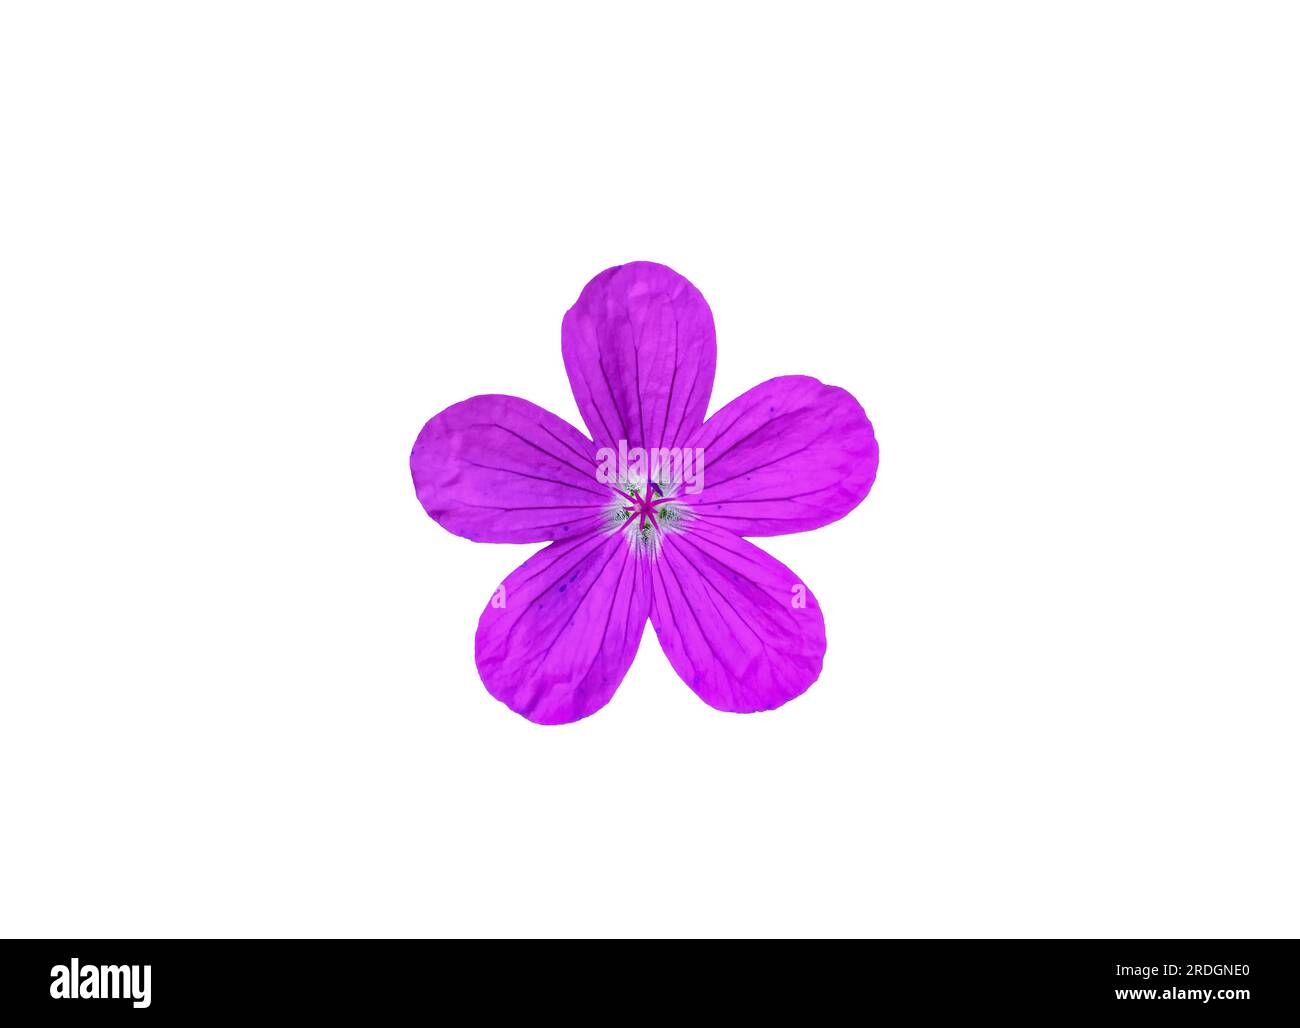 Fleur rose de canneberge en bois ou Geranium sylvaticum isolée sur fond blanc. Icône découpée de plantes violettes de géraniums Woodland. Marsh Crane's-bill, GER Banque D'Images